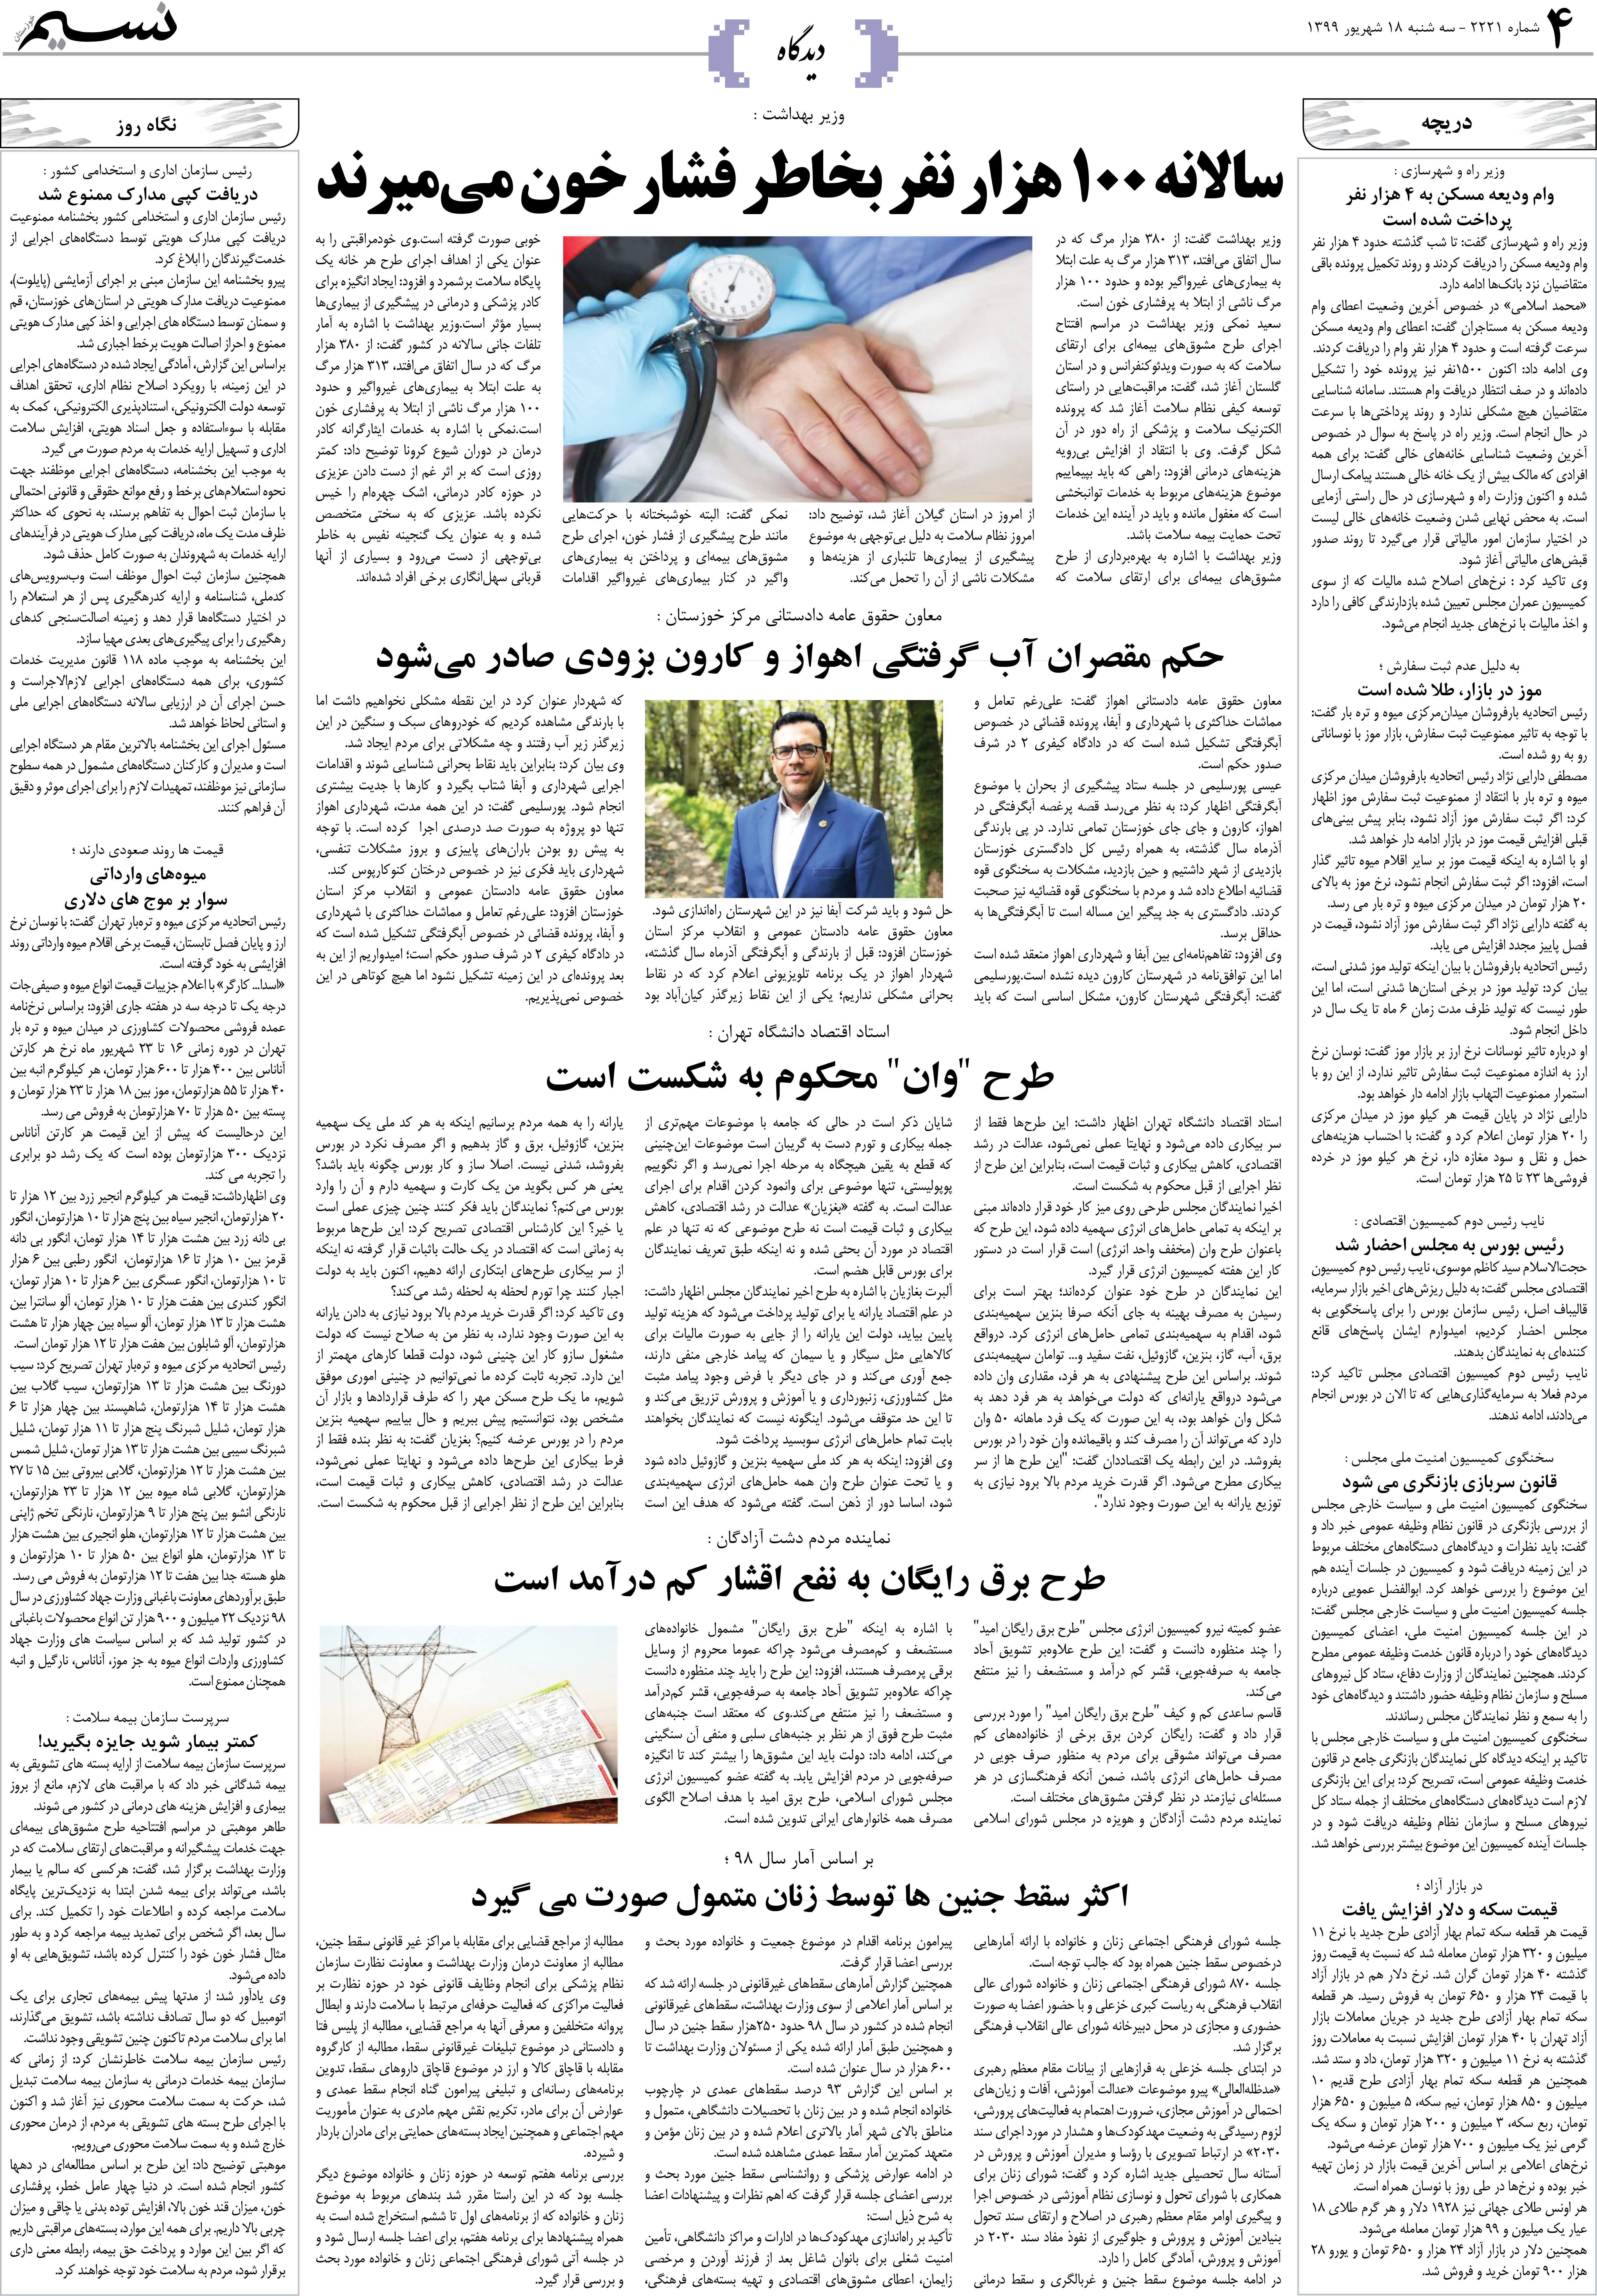 صفحه دیدگاه روزنامه نسیم شماره 2221